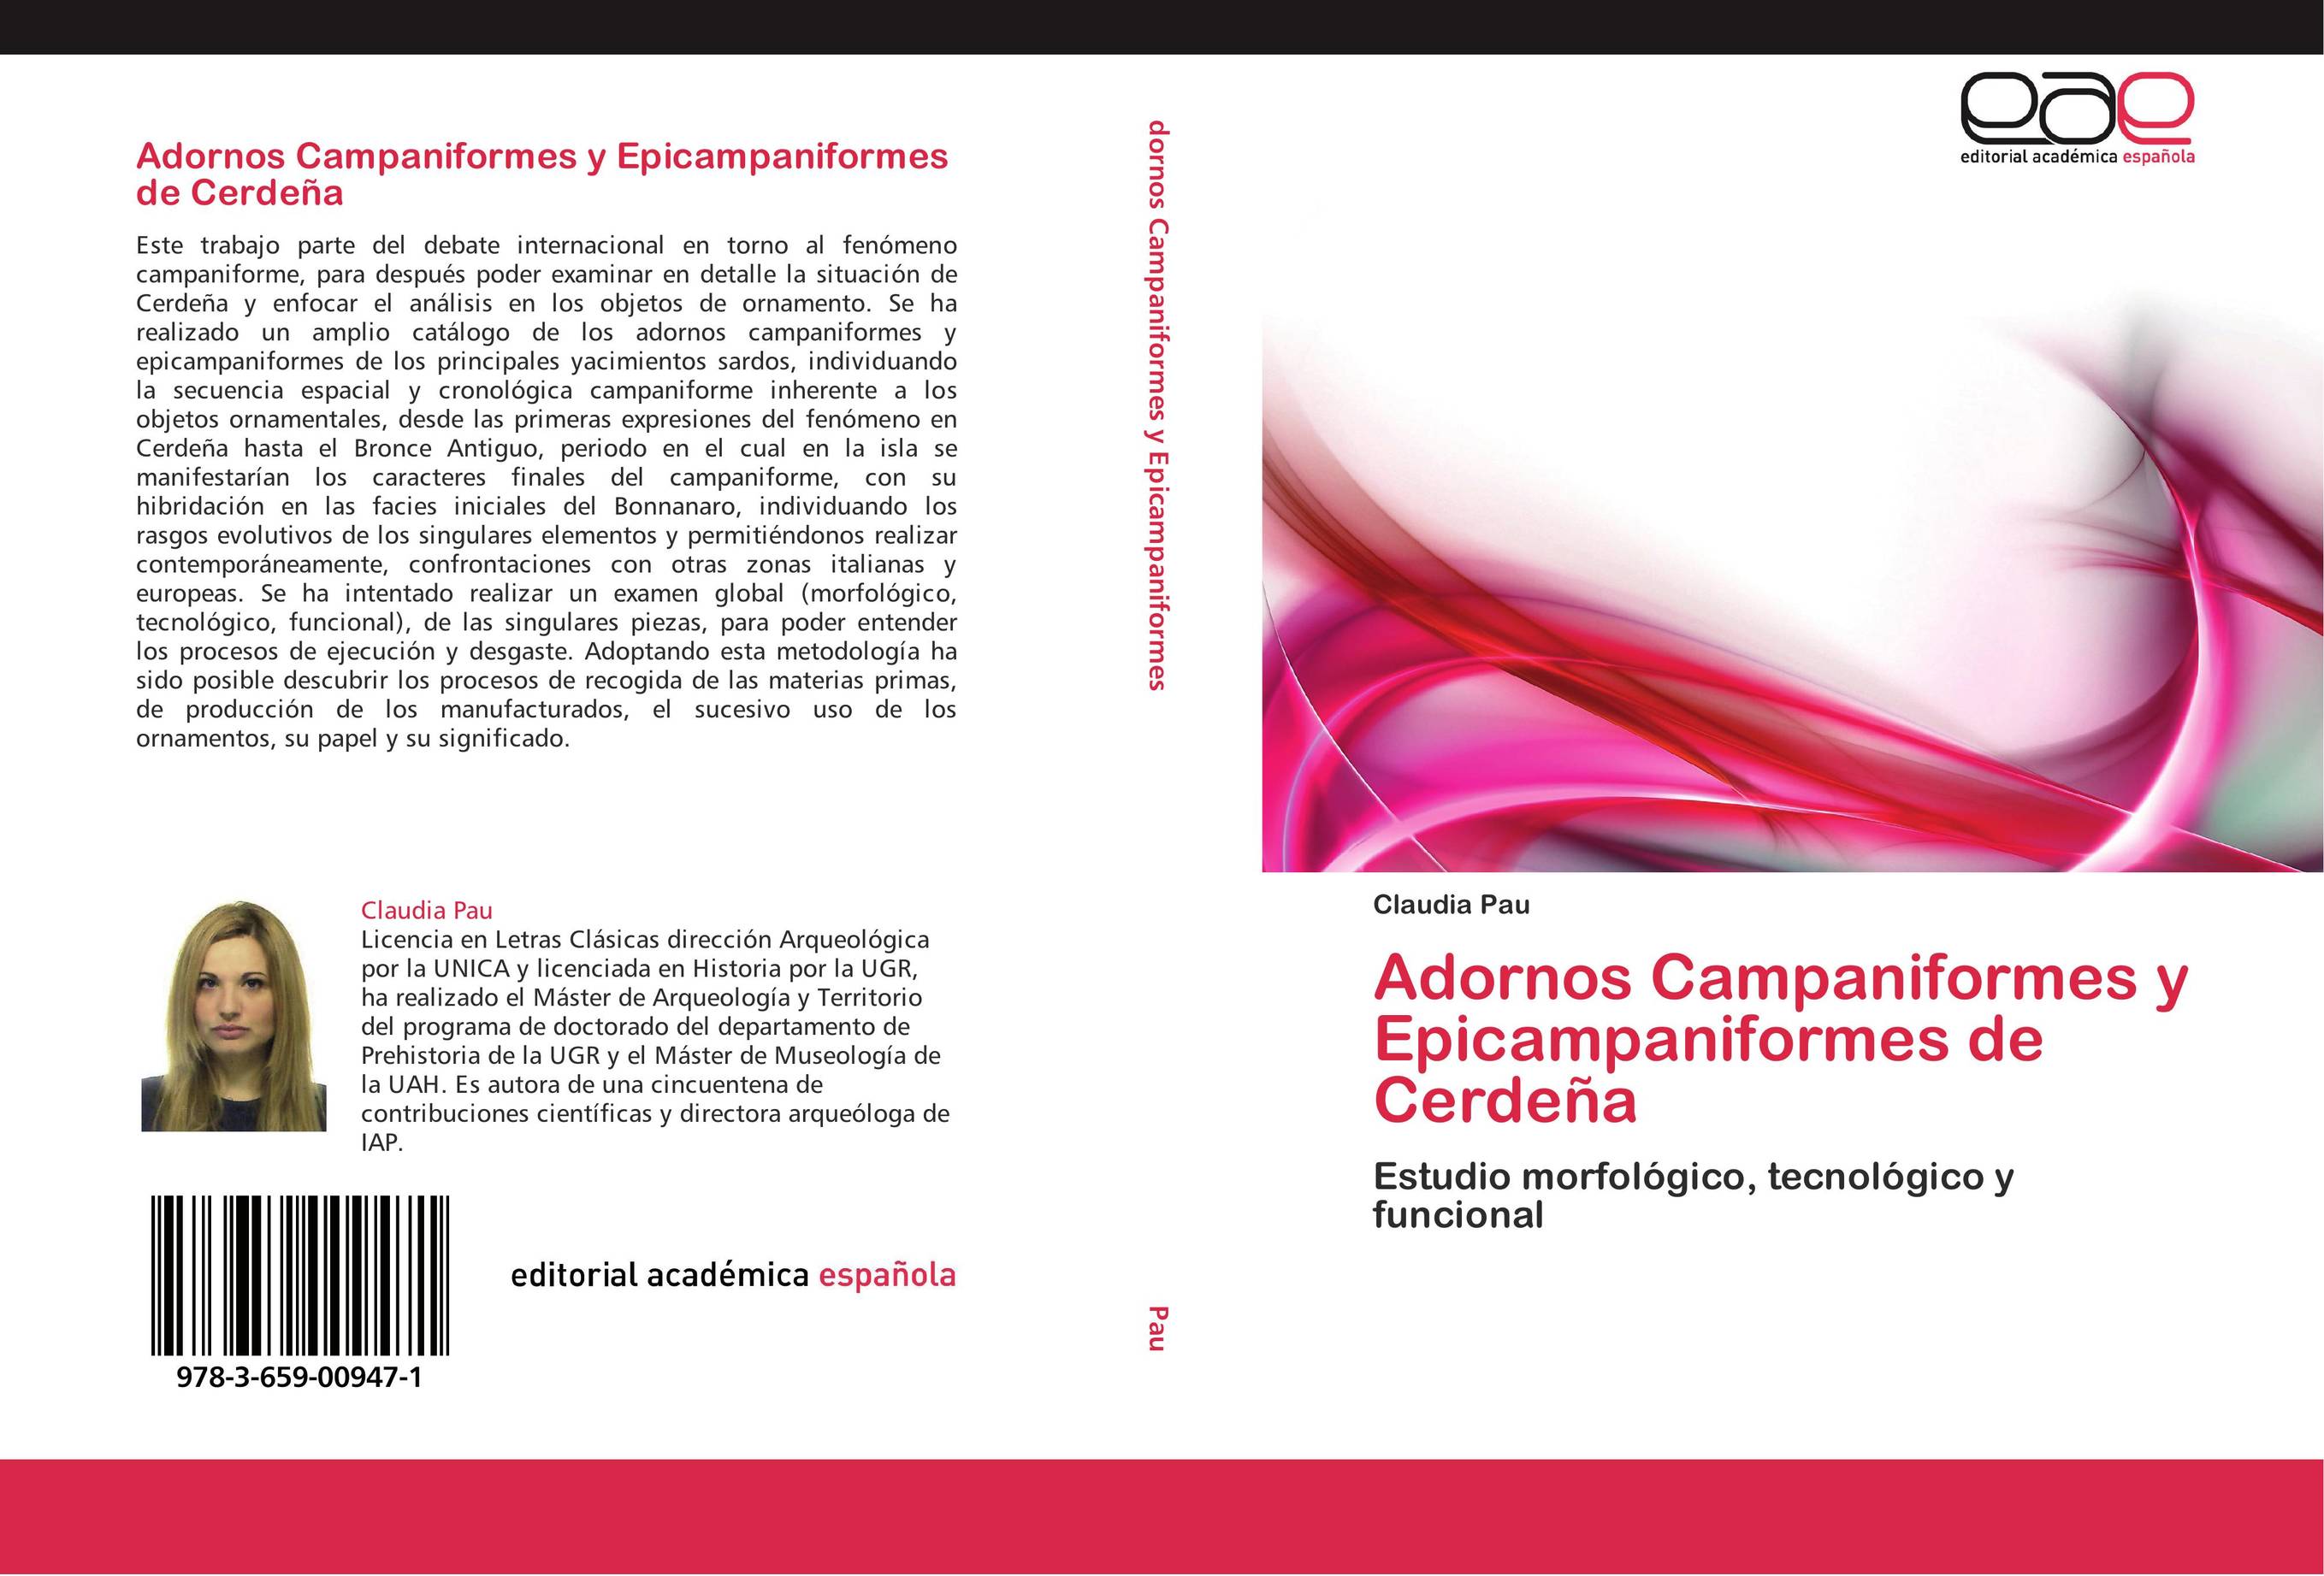 Adornos Campaniformes y Epicampaniformes de Cerdeña